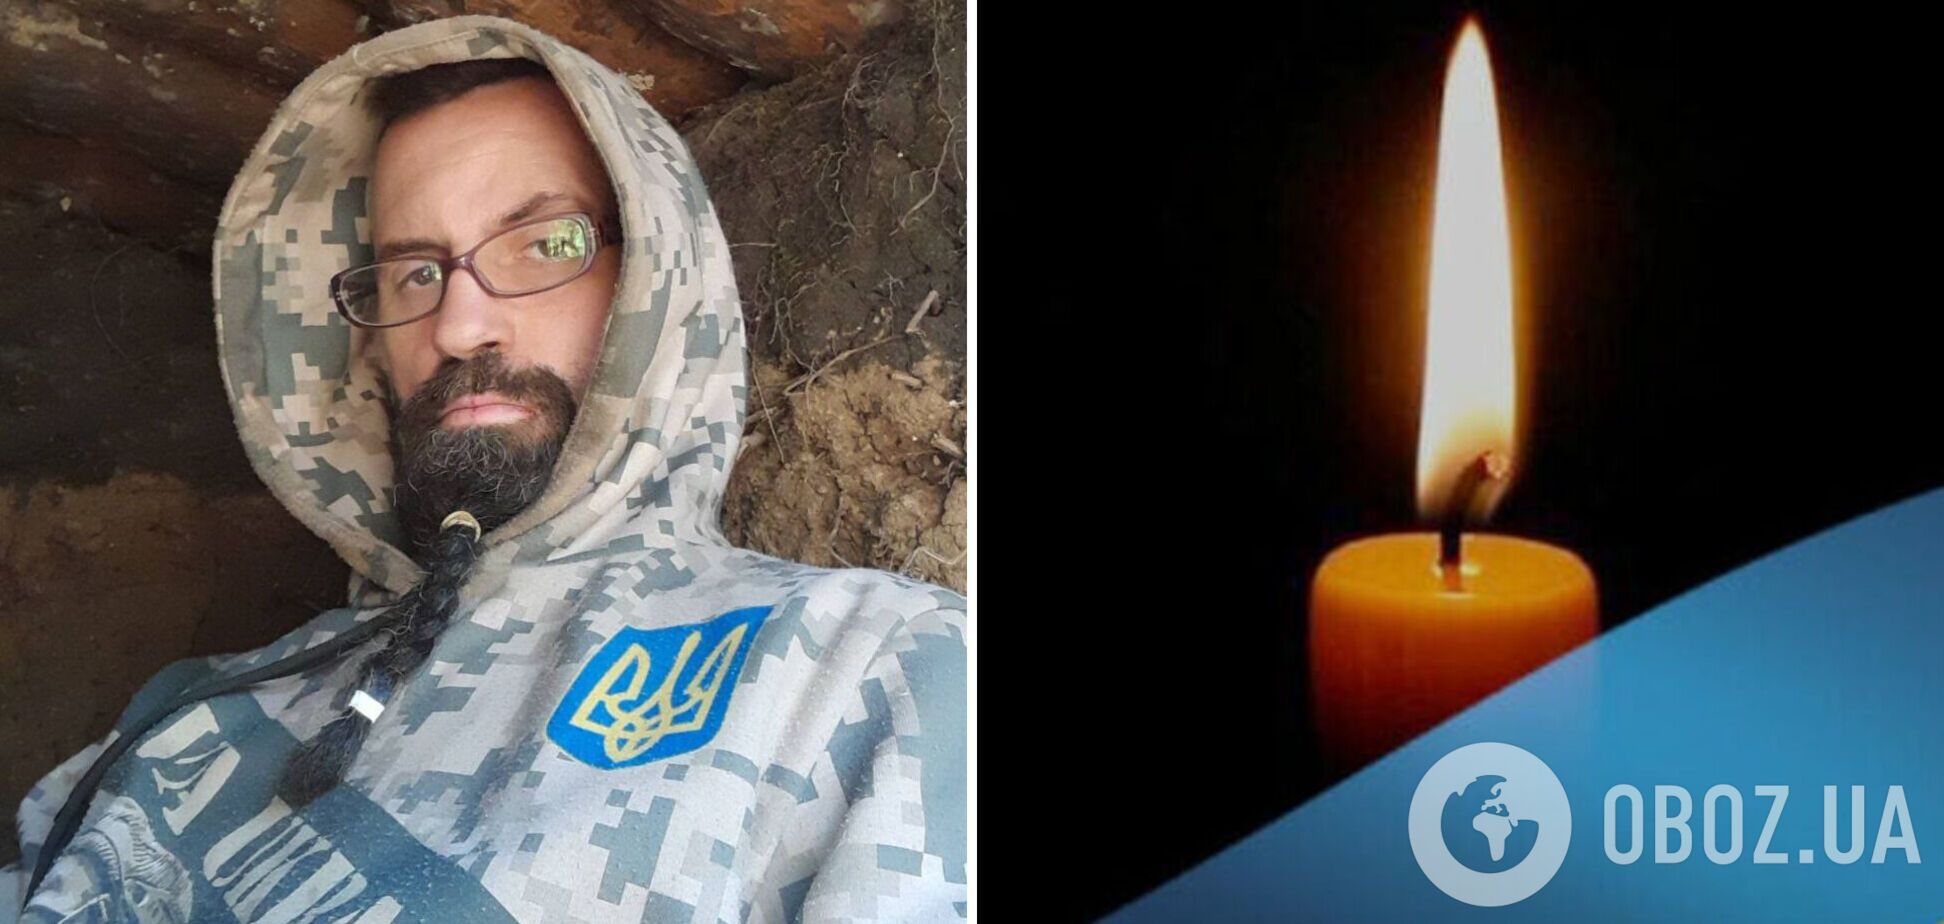 'Єдиний син у батьків': під час виконання бойового завдання загинув захисник зі Львова. Фото 